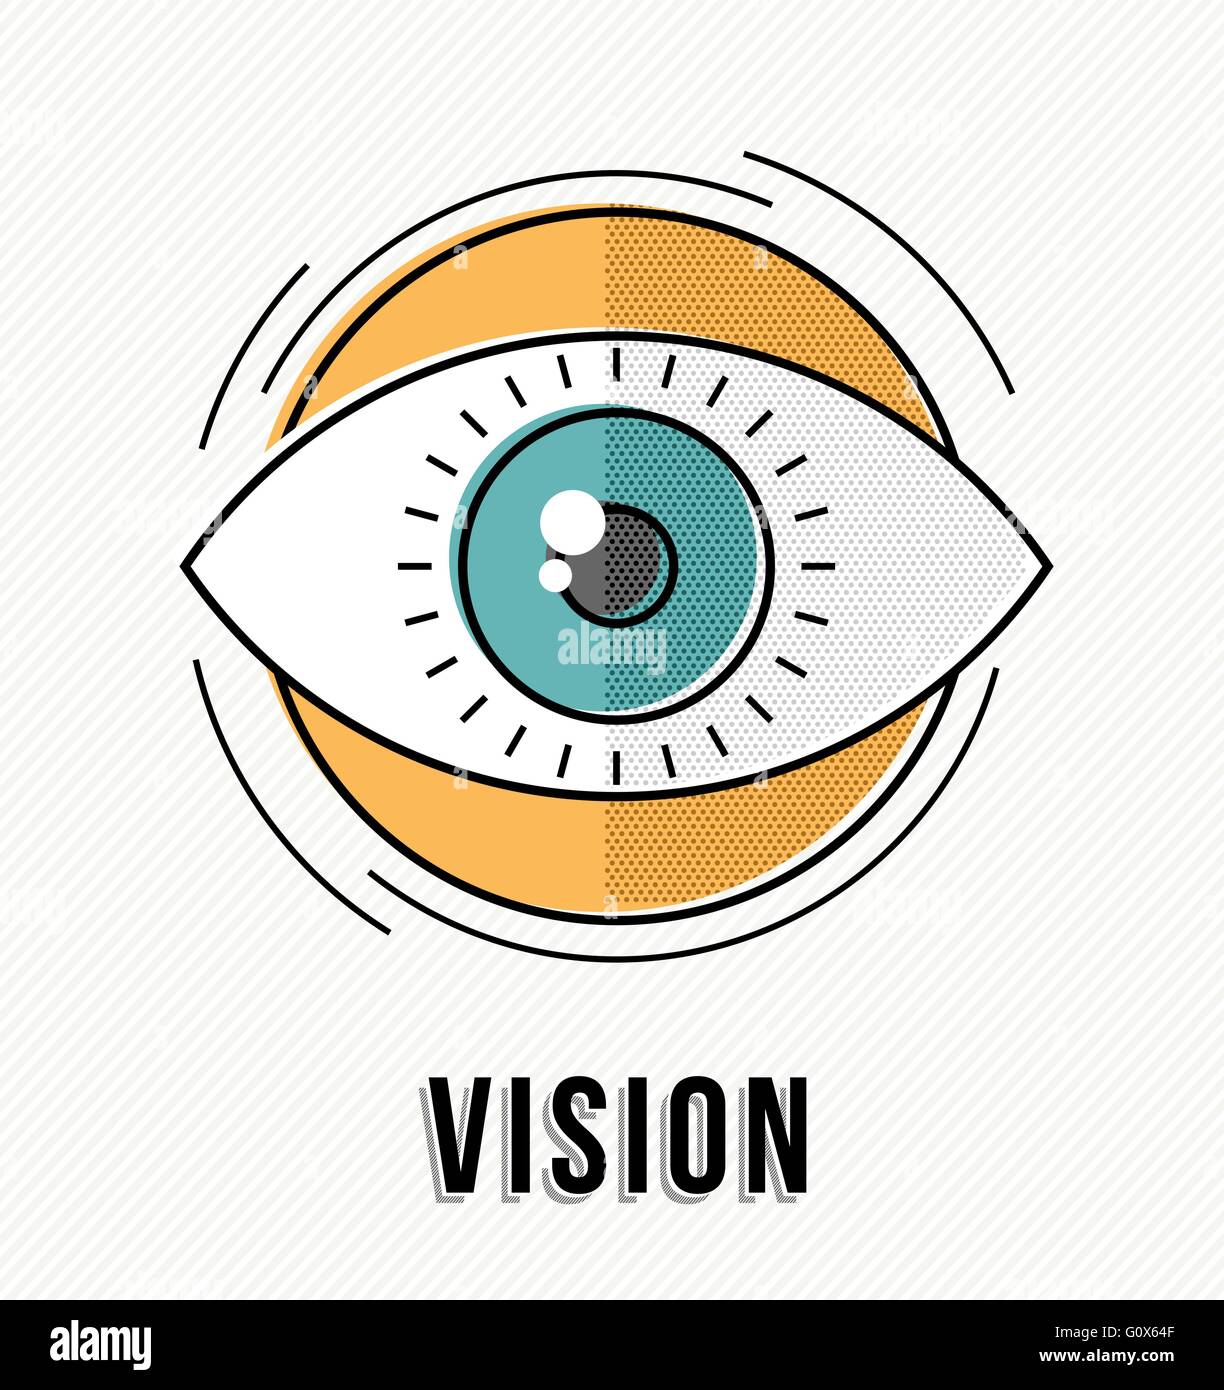 Vision concept illustration avec les droits de l'eye ball design, creative business idea en ligne moderne de style art. Vecteur EPS10. Illustration de Vecteur